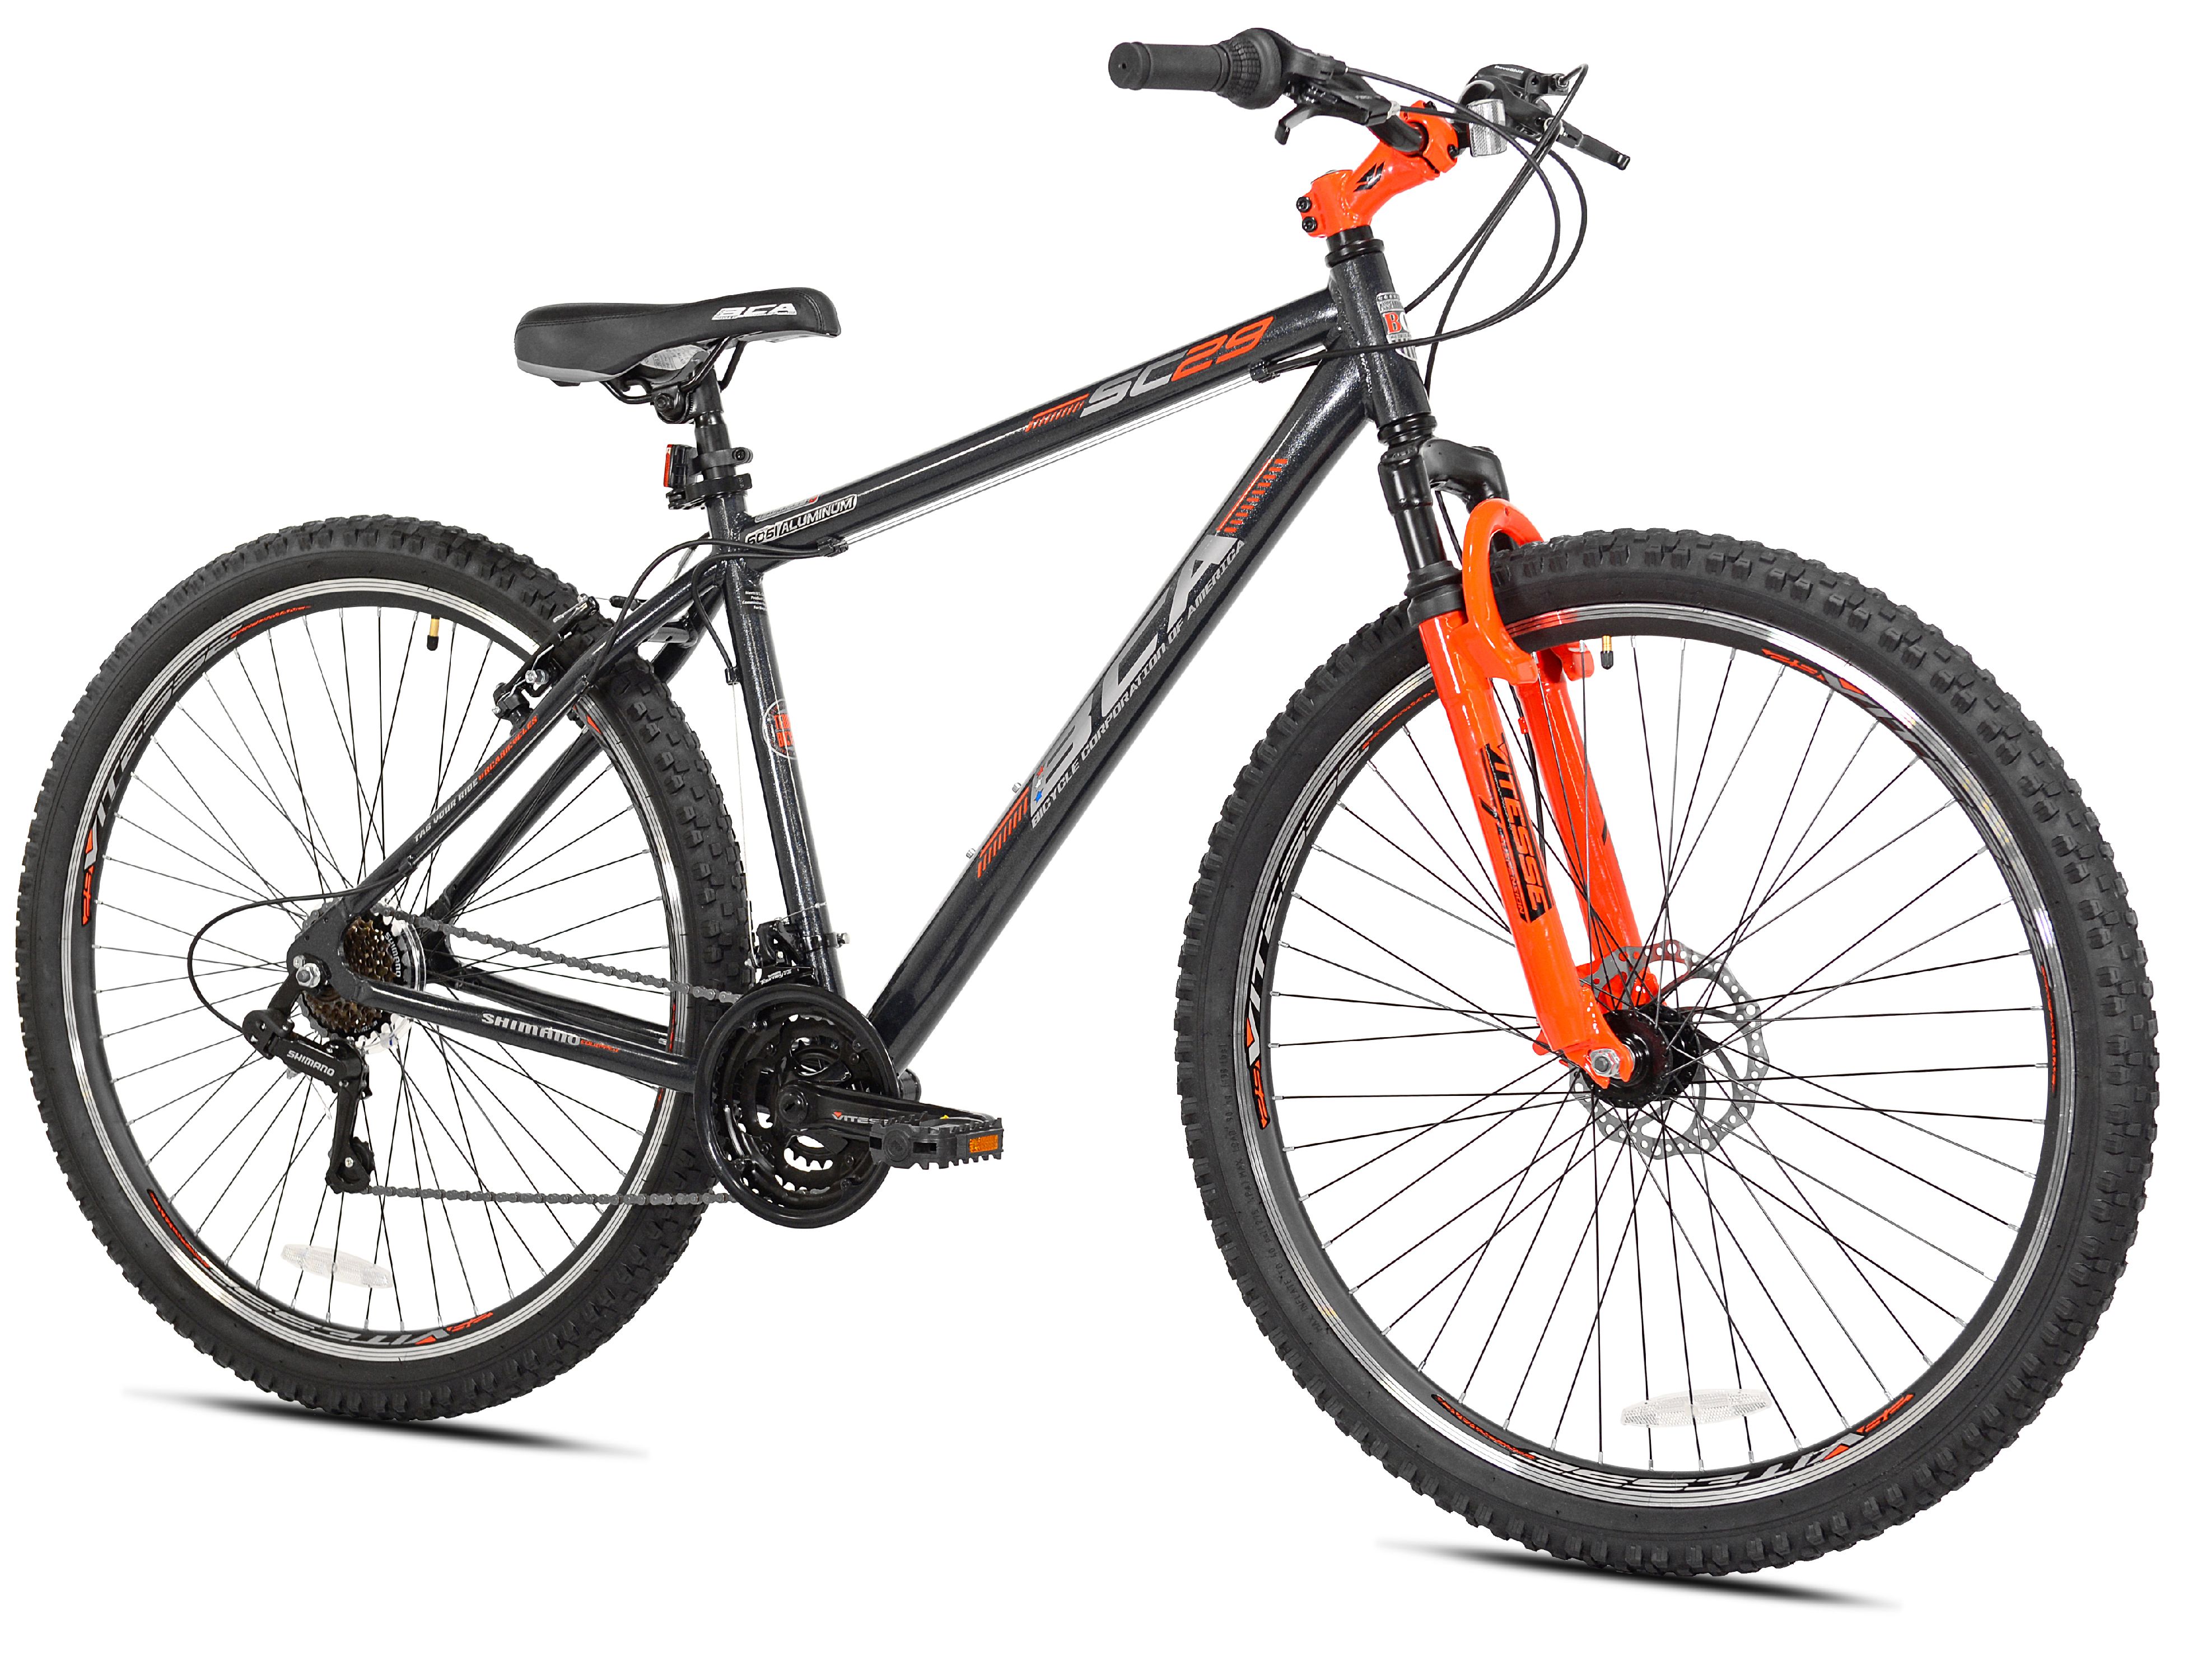 BCA 29" SC29 Mountain Bike, Gray/Orange - image 2 of 7